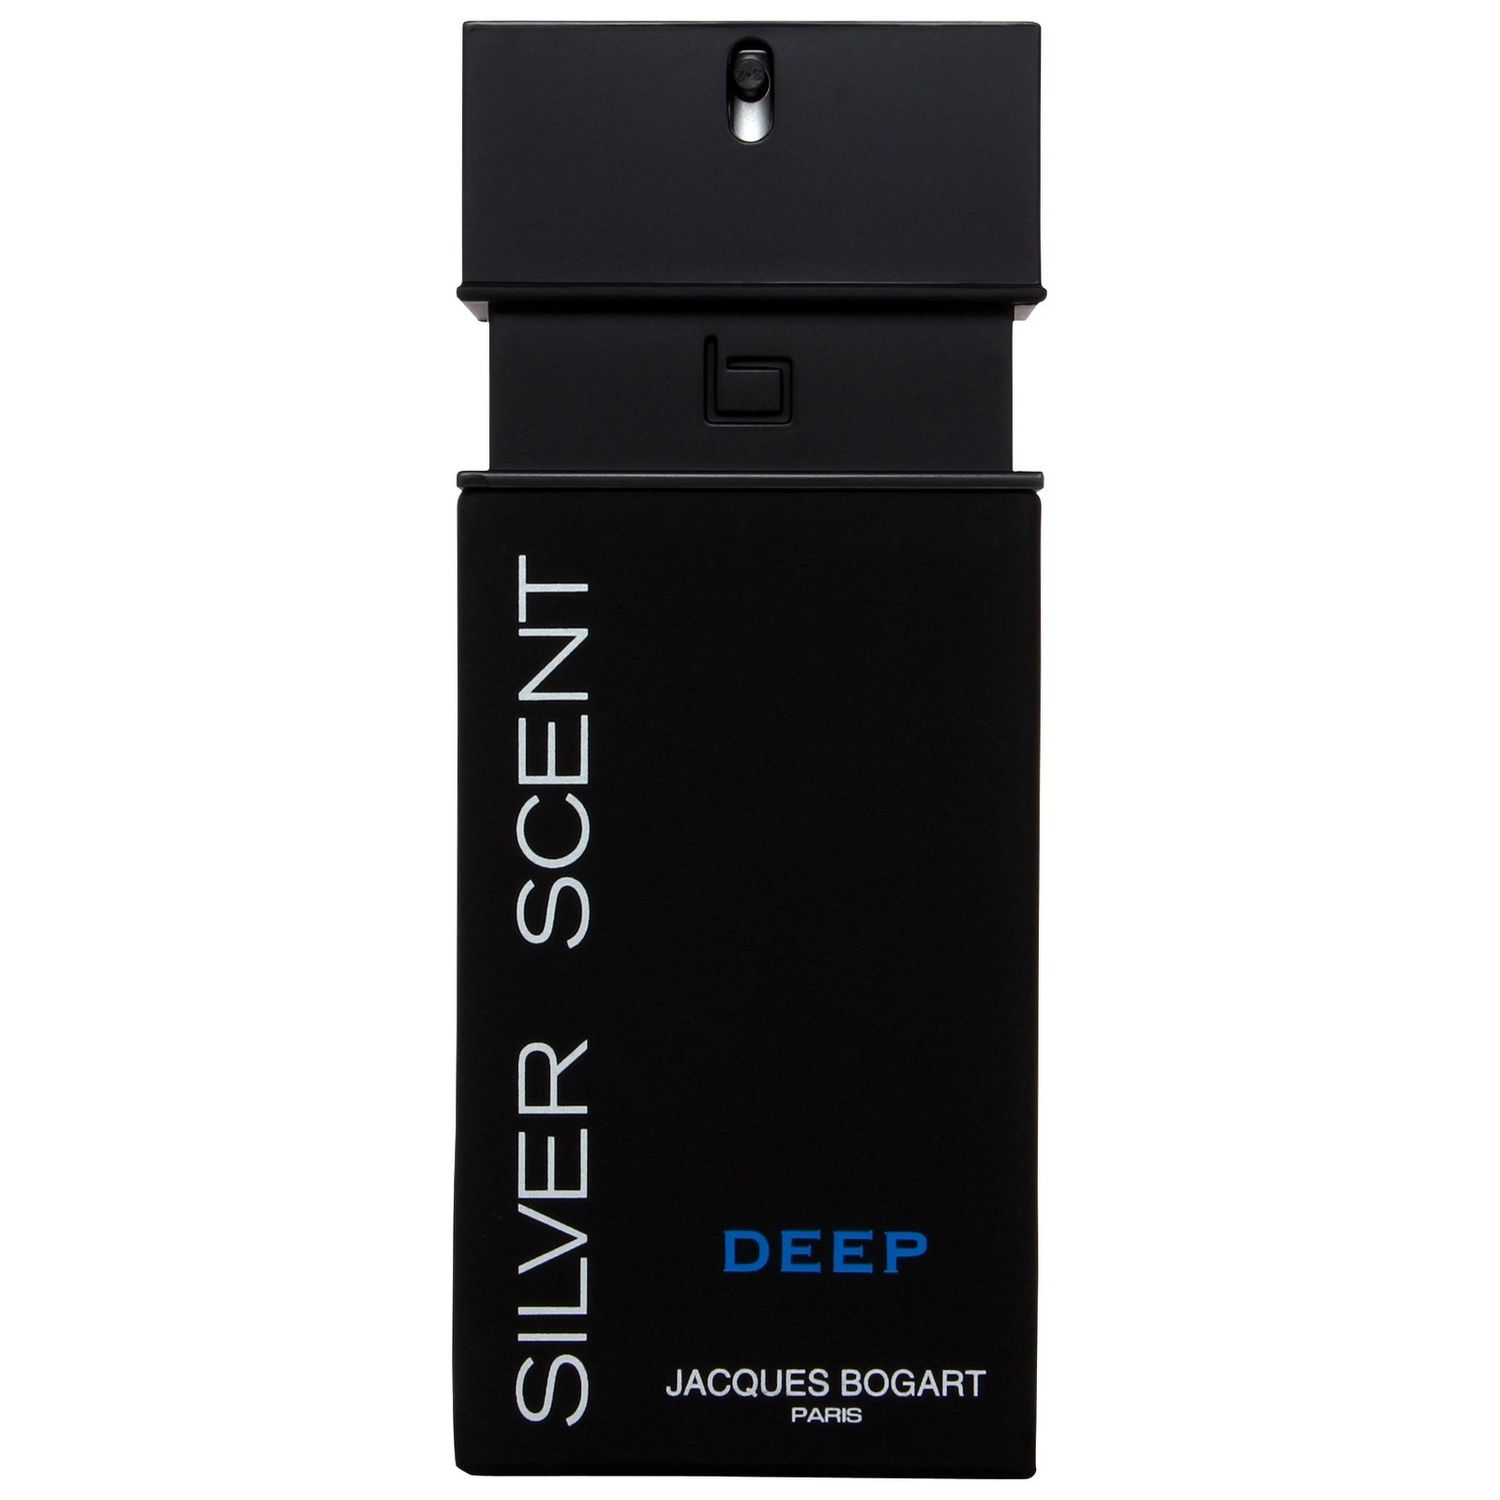 Buy Jacques Bogart Silver Scent Deep Eau de Toilette 100ml - Purplle